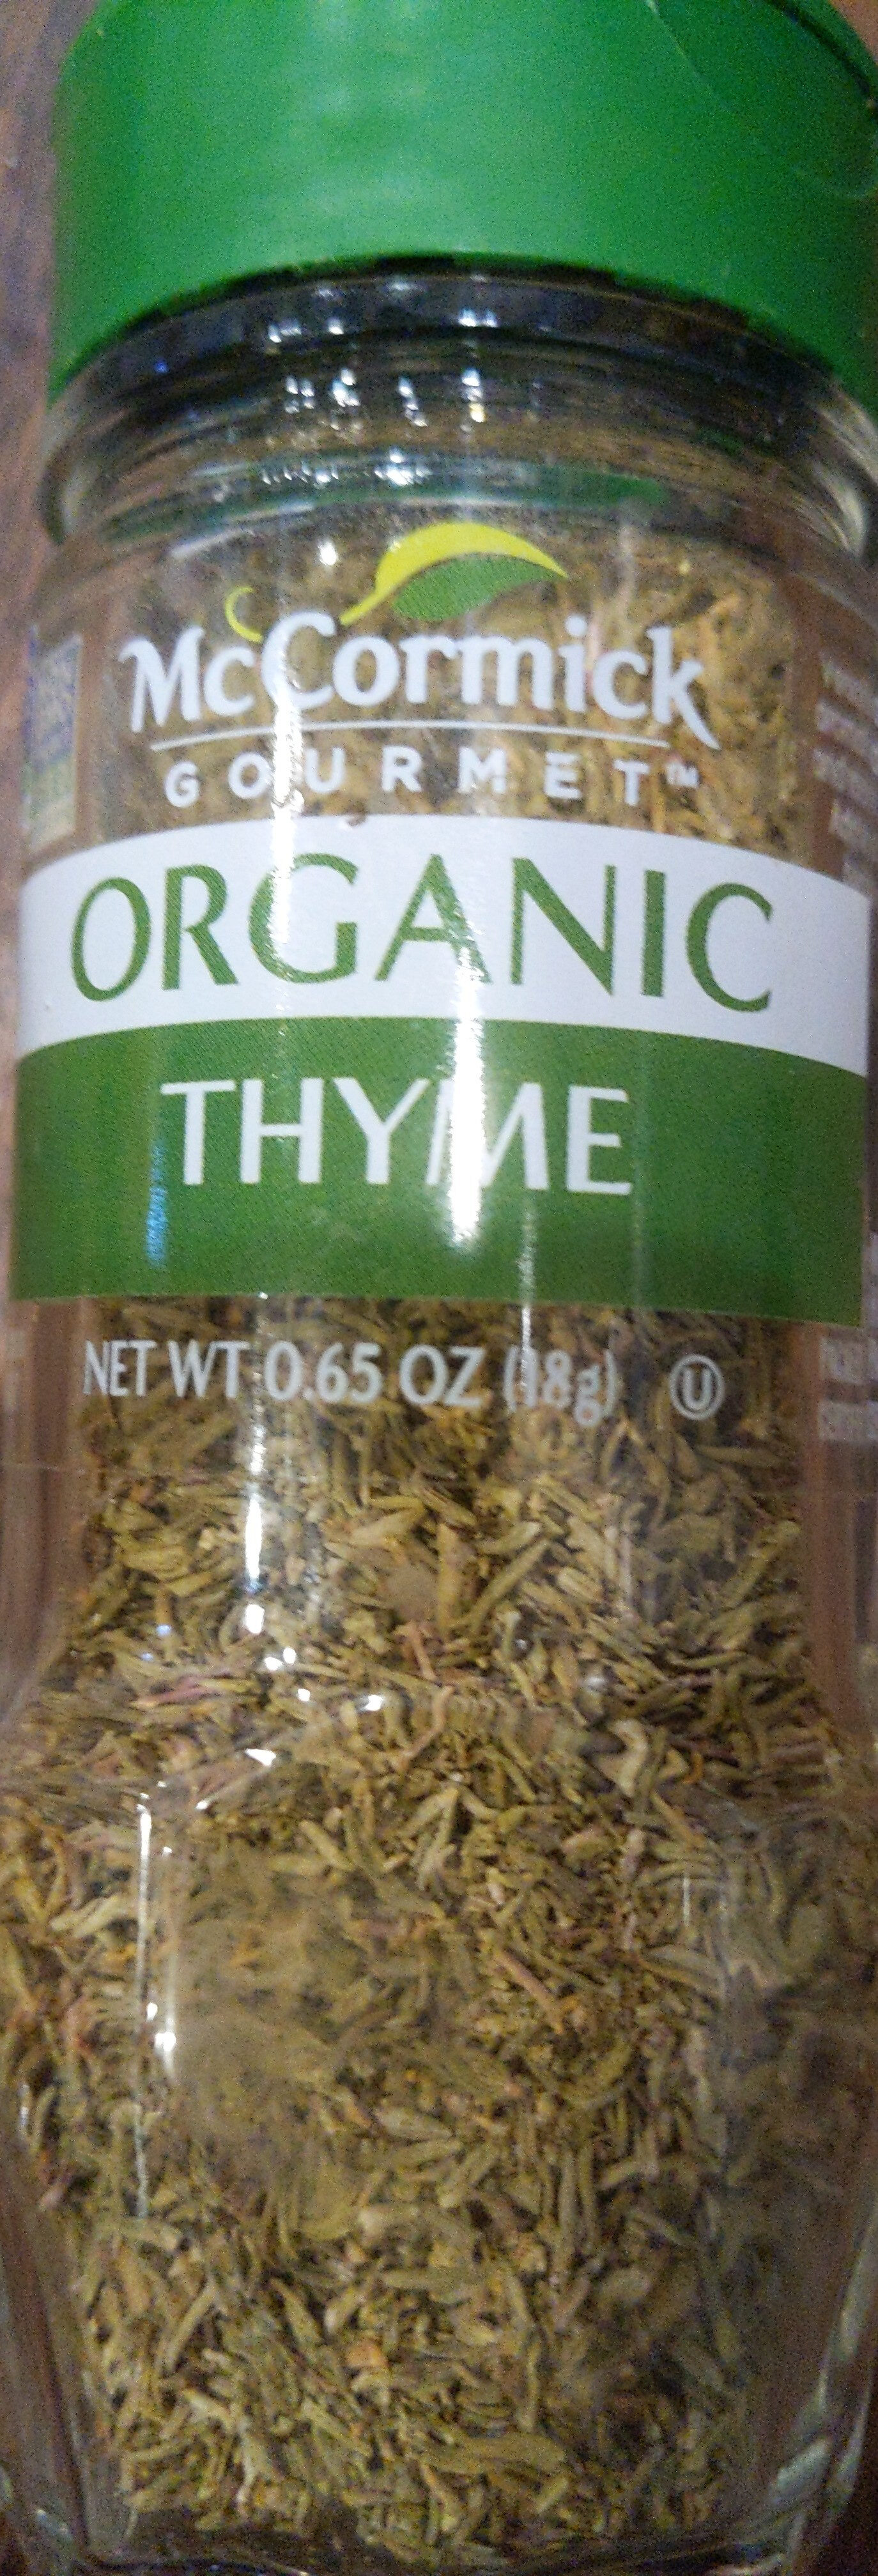 McCormick Gourmet Organic Thyme Leaves - Product - en